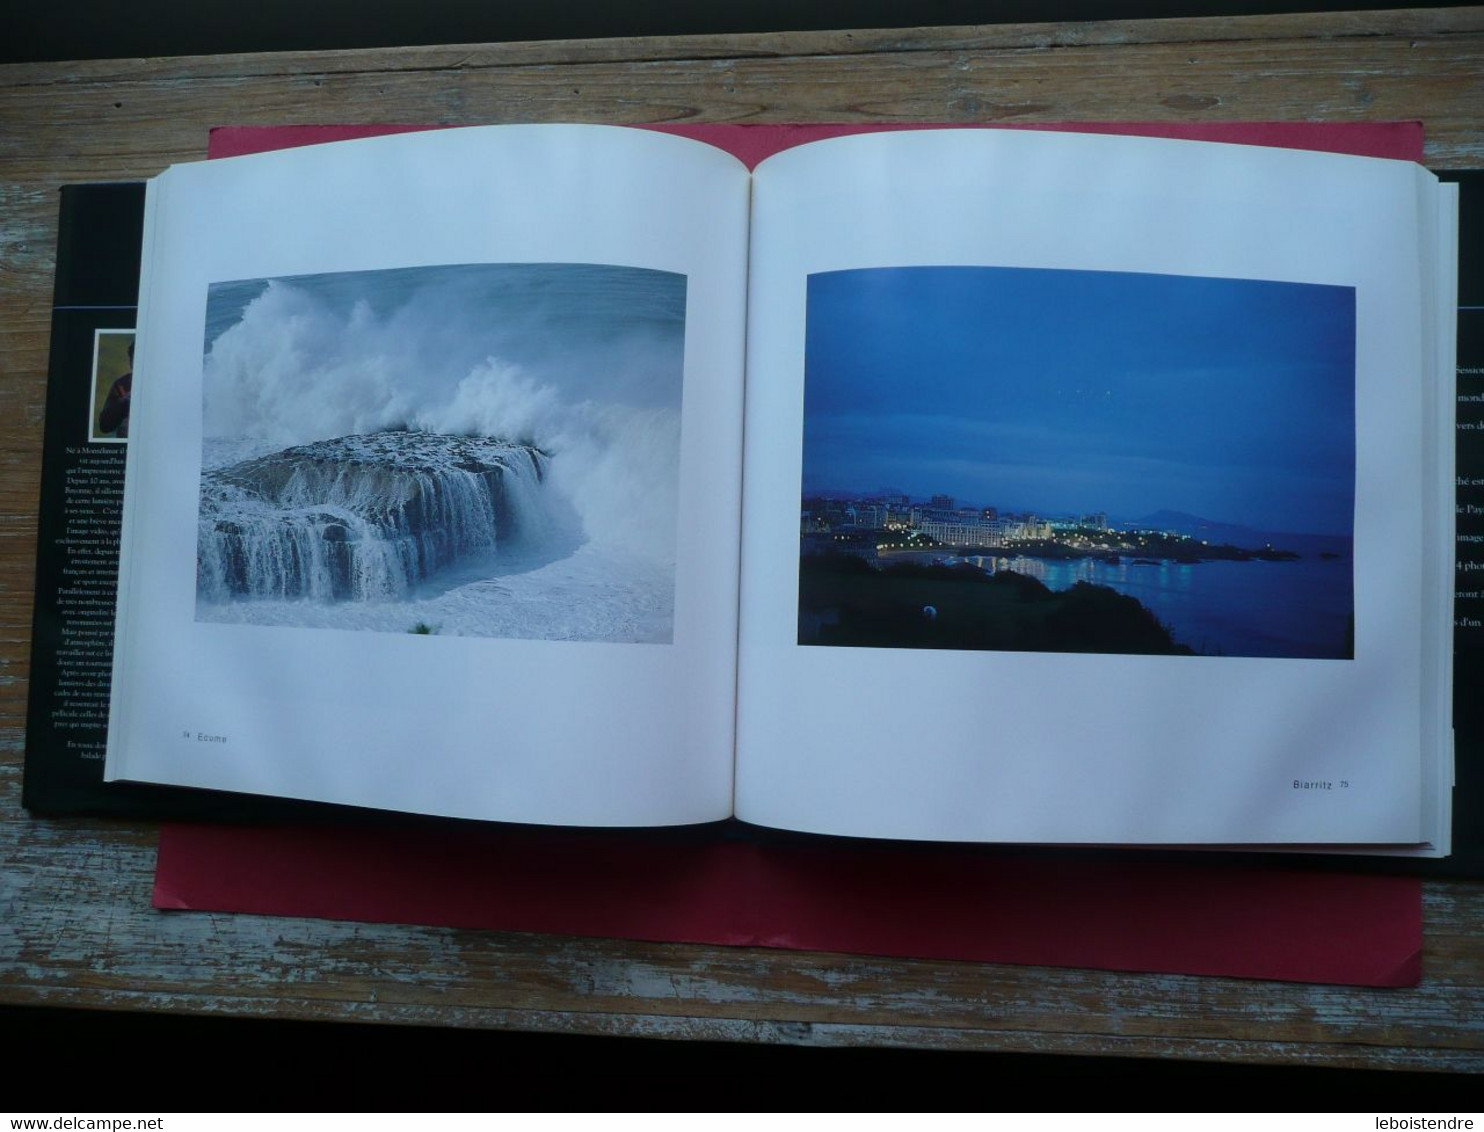 ARGIA LUMIERES EN PAYS BASQUE ERIC CHAUVE 1992 EDITIONS SURF SESSION